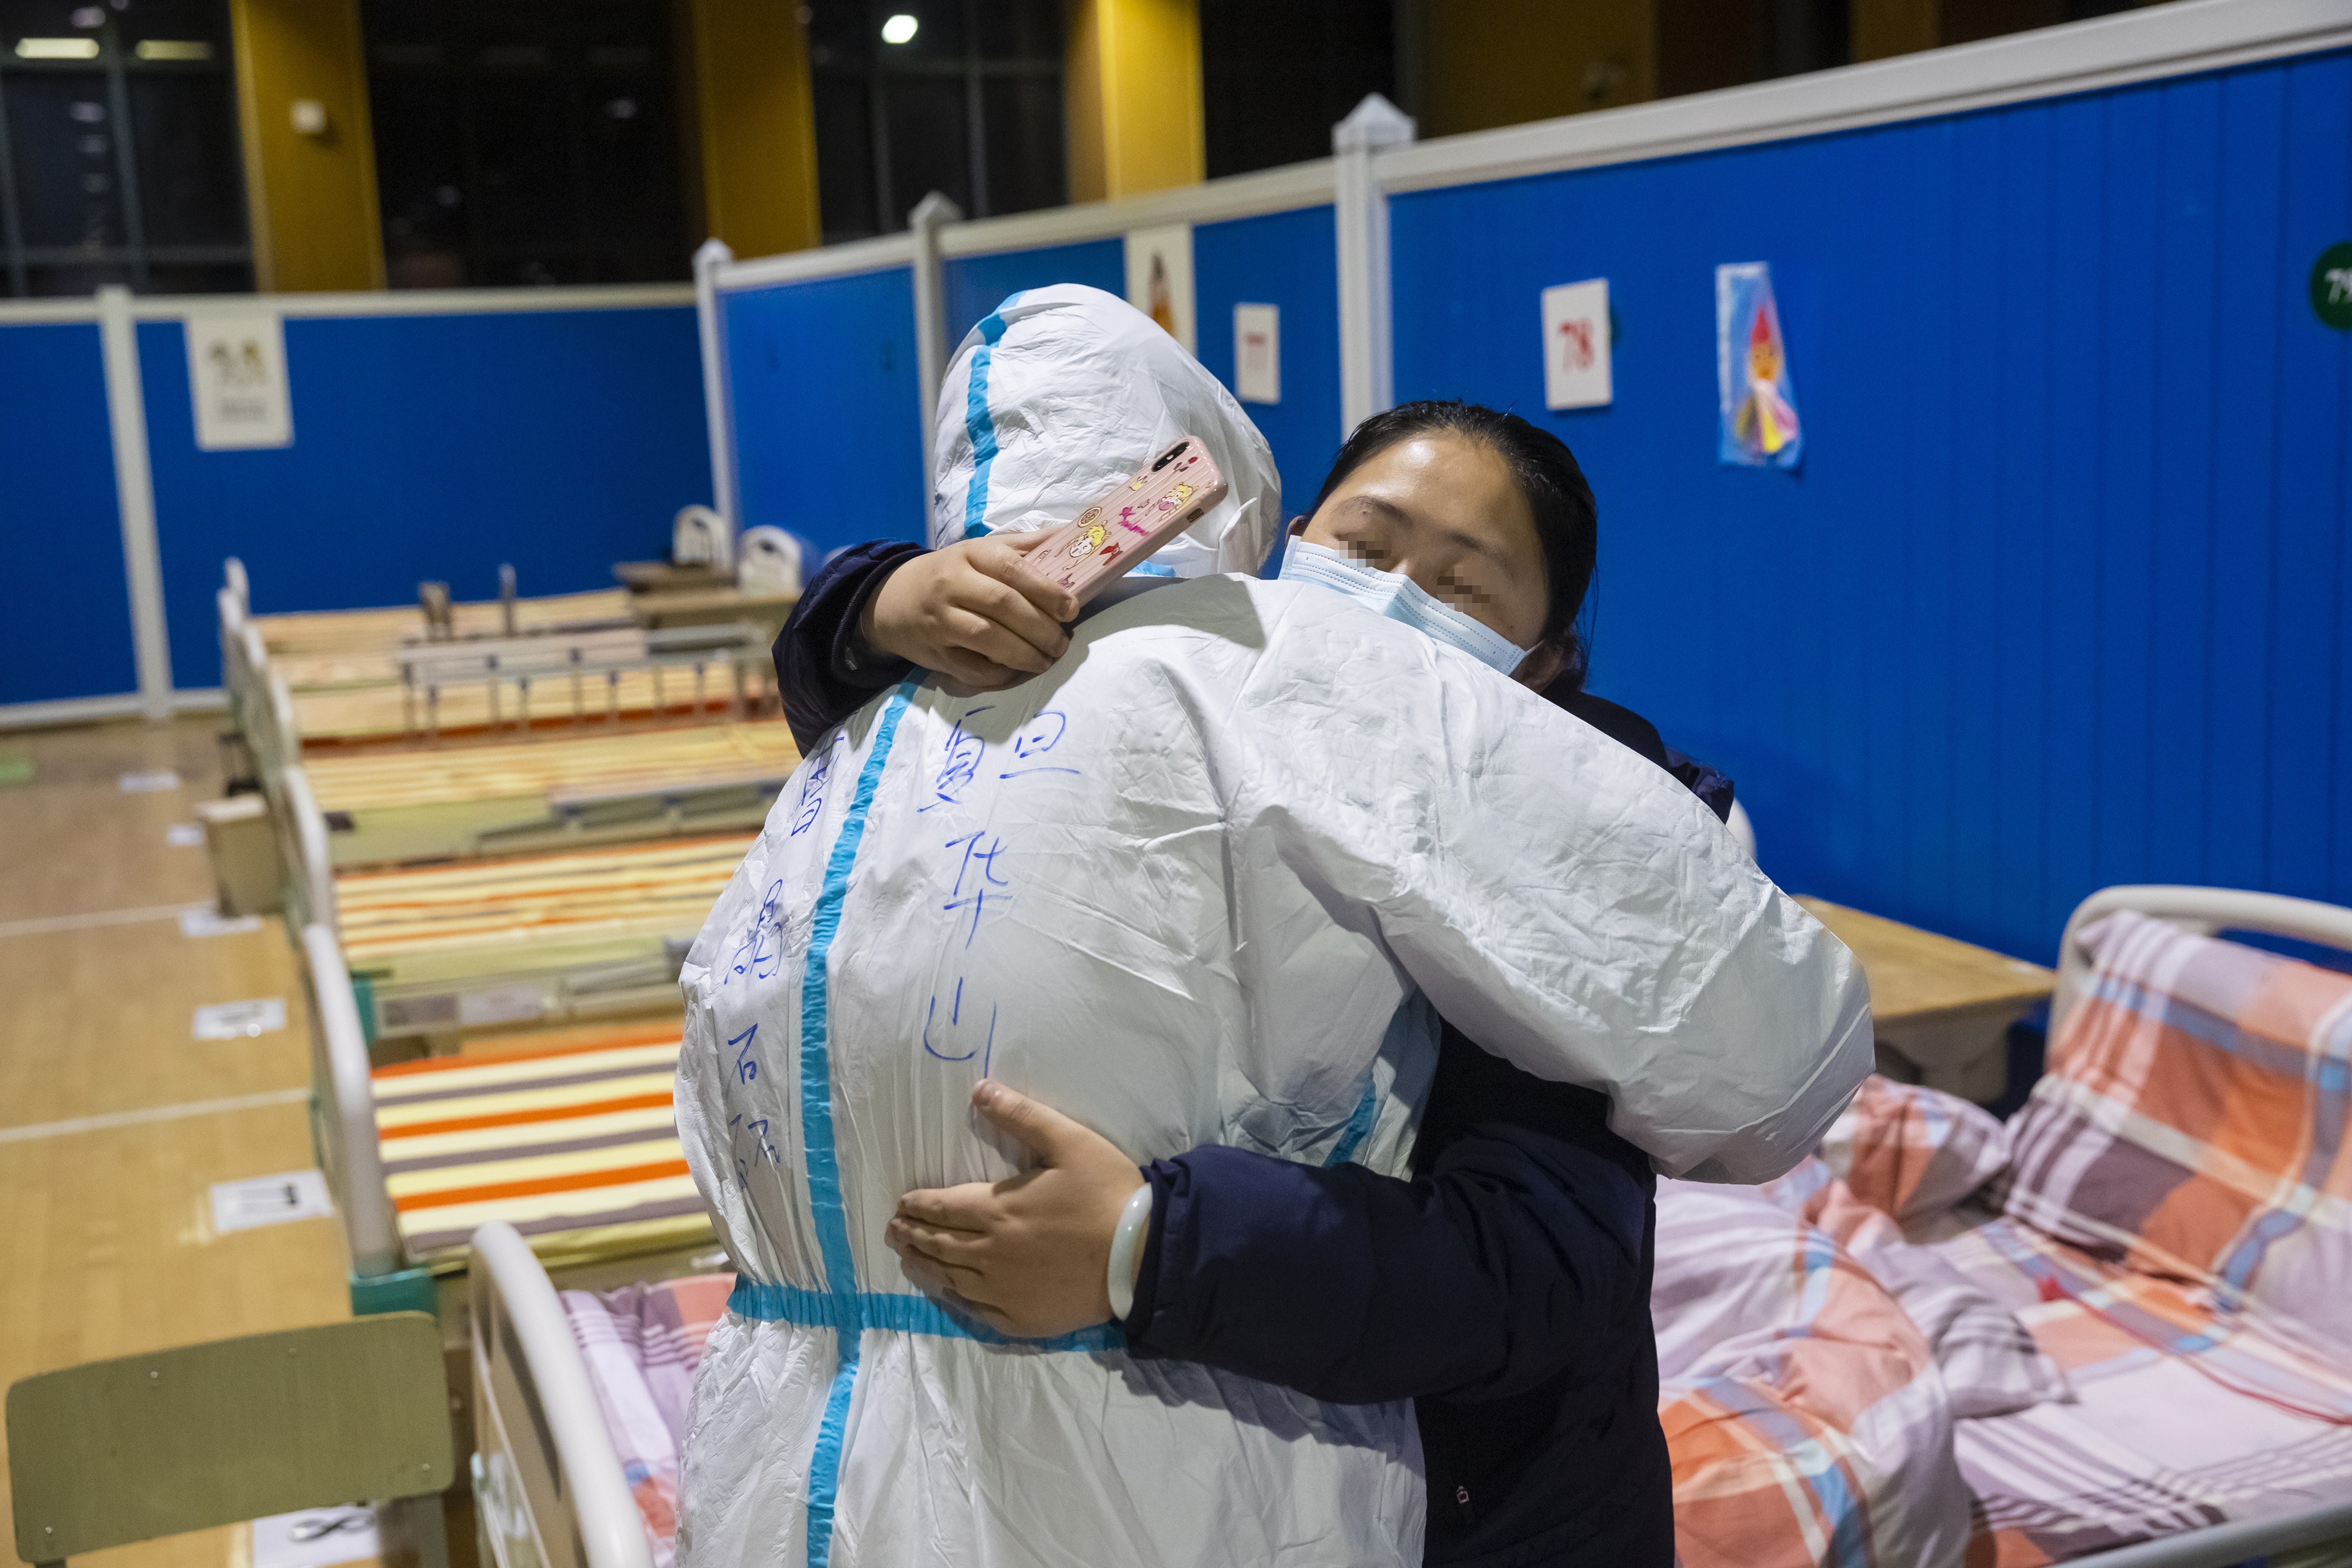 Médico e paciente se abraçam no último dia de funcionamento de hospital temporário em Wuhan (Foto: Xinhua/Xiao Yijiu)